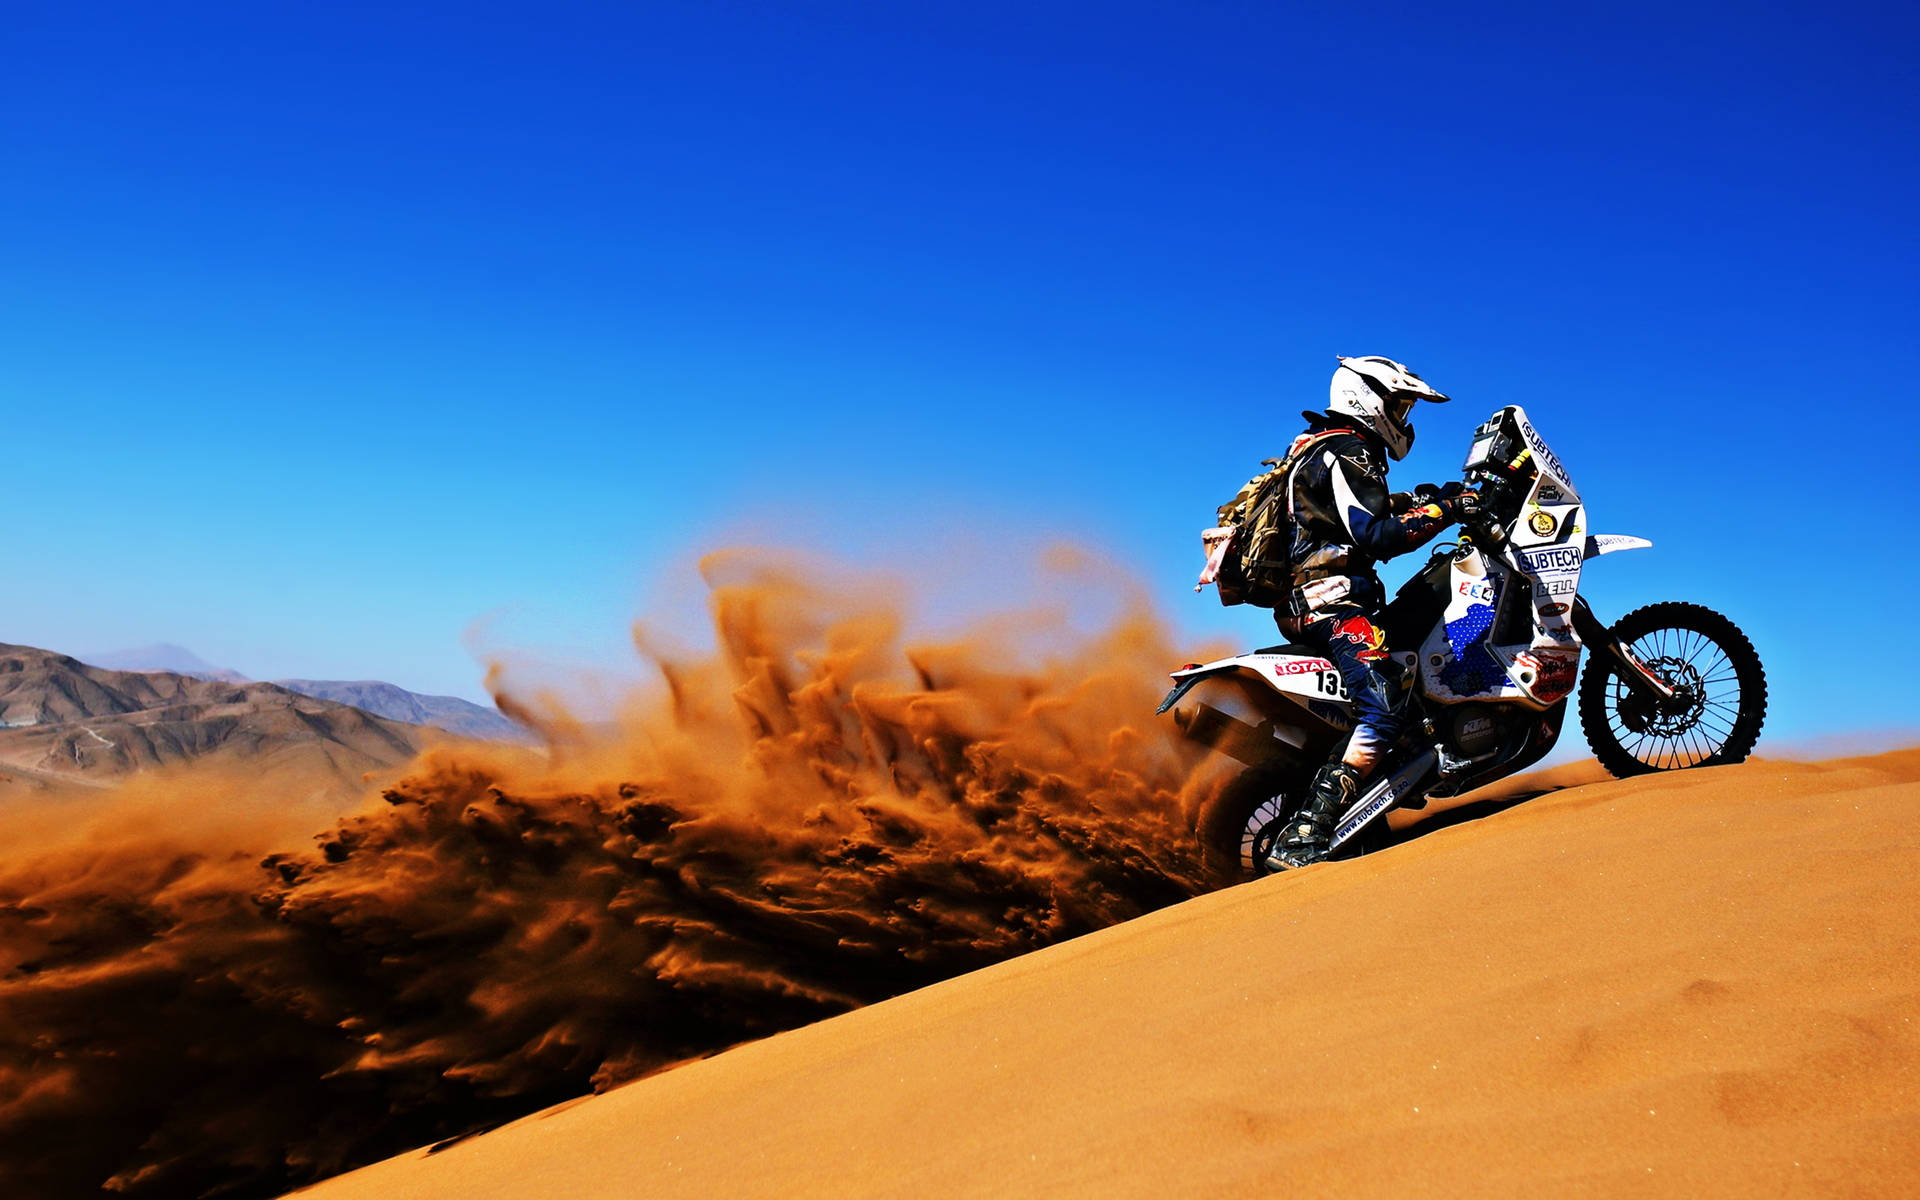 Dakar Desert Sand Motocross Background